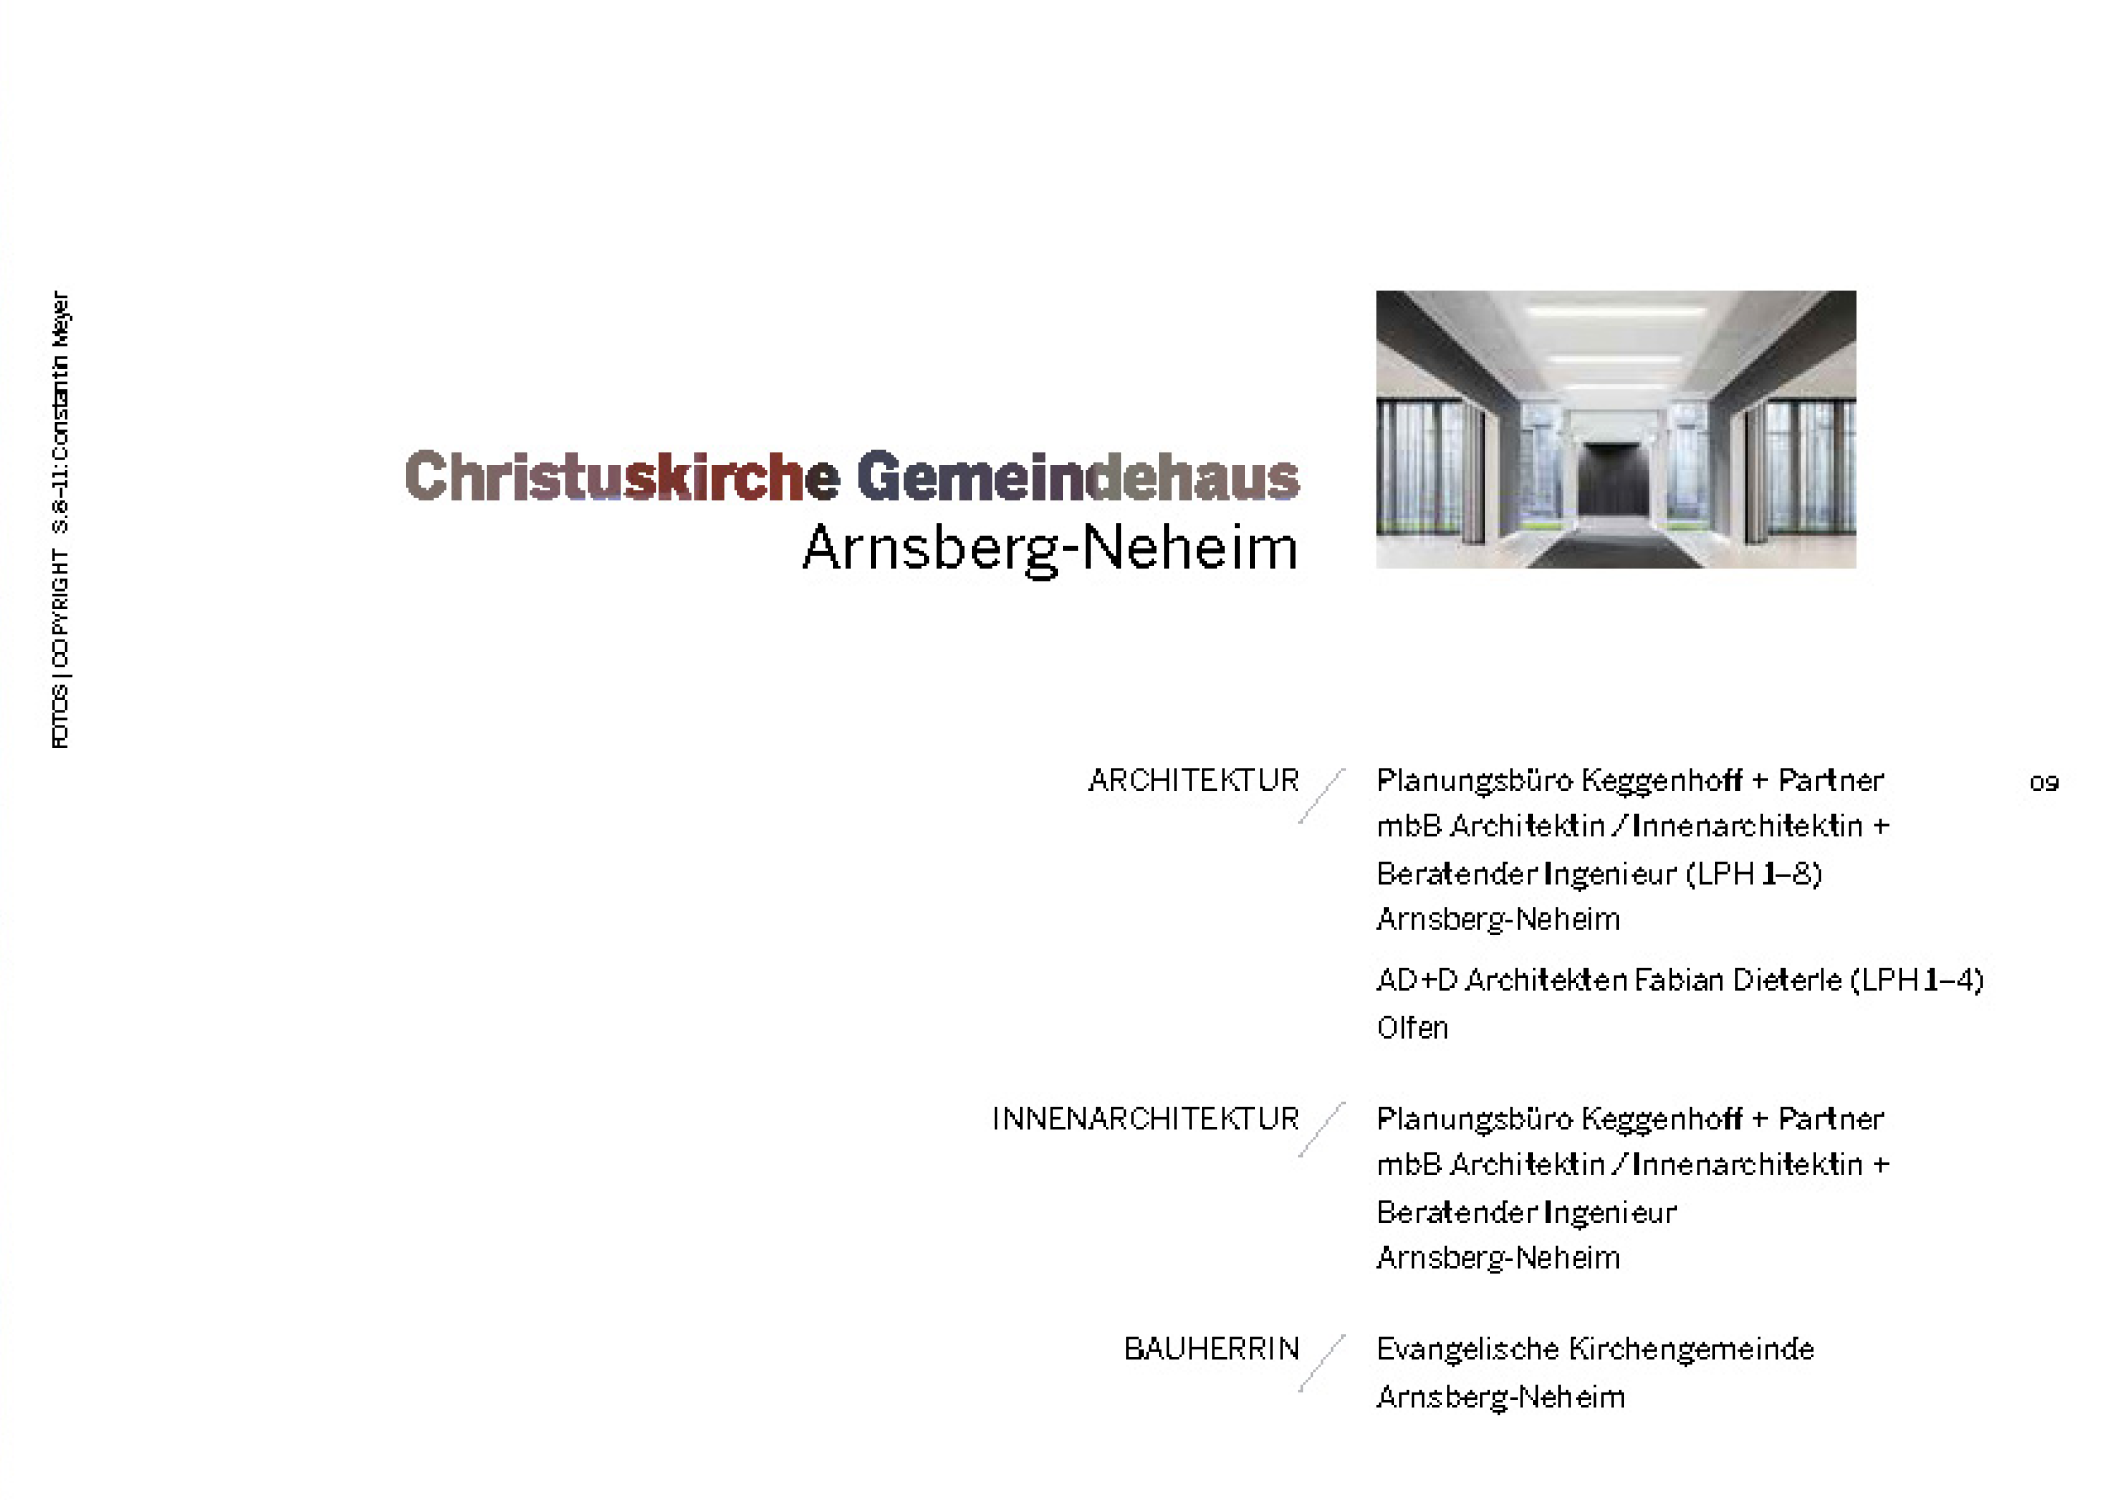 adstudio-architekten-publikation